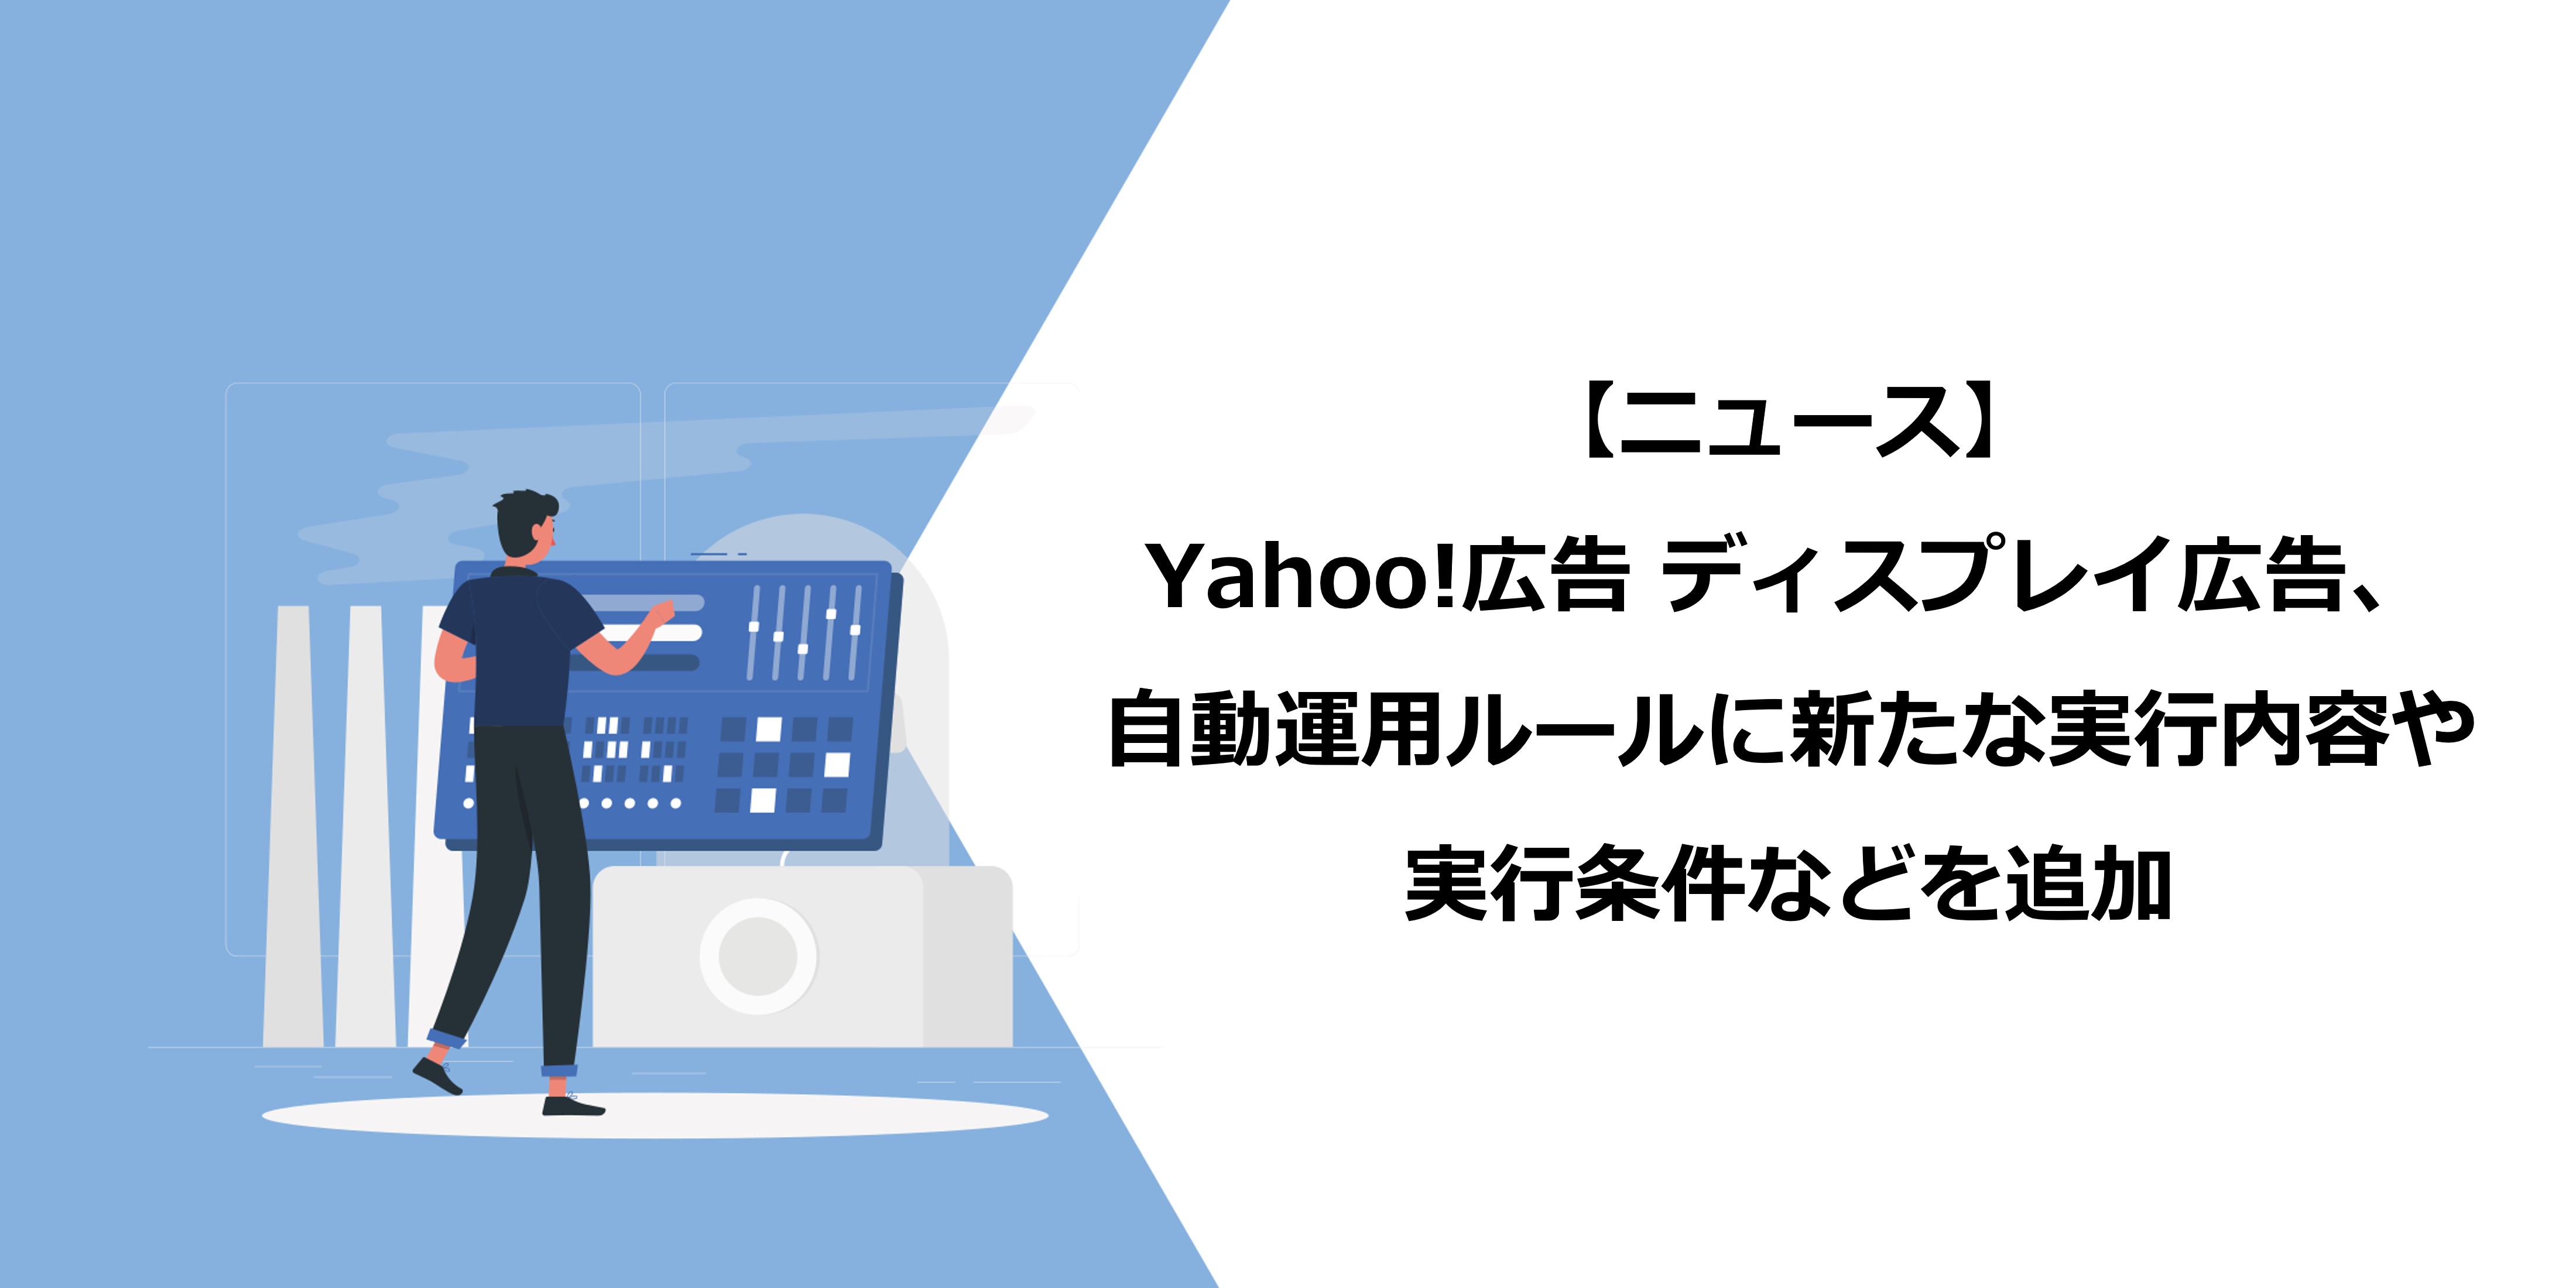 Yahoo!広告 ディスプレイ広告、自動運用ルールに新たな実行内容や実行条件などを追加